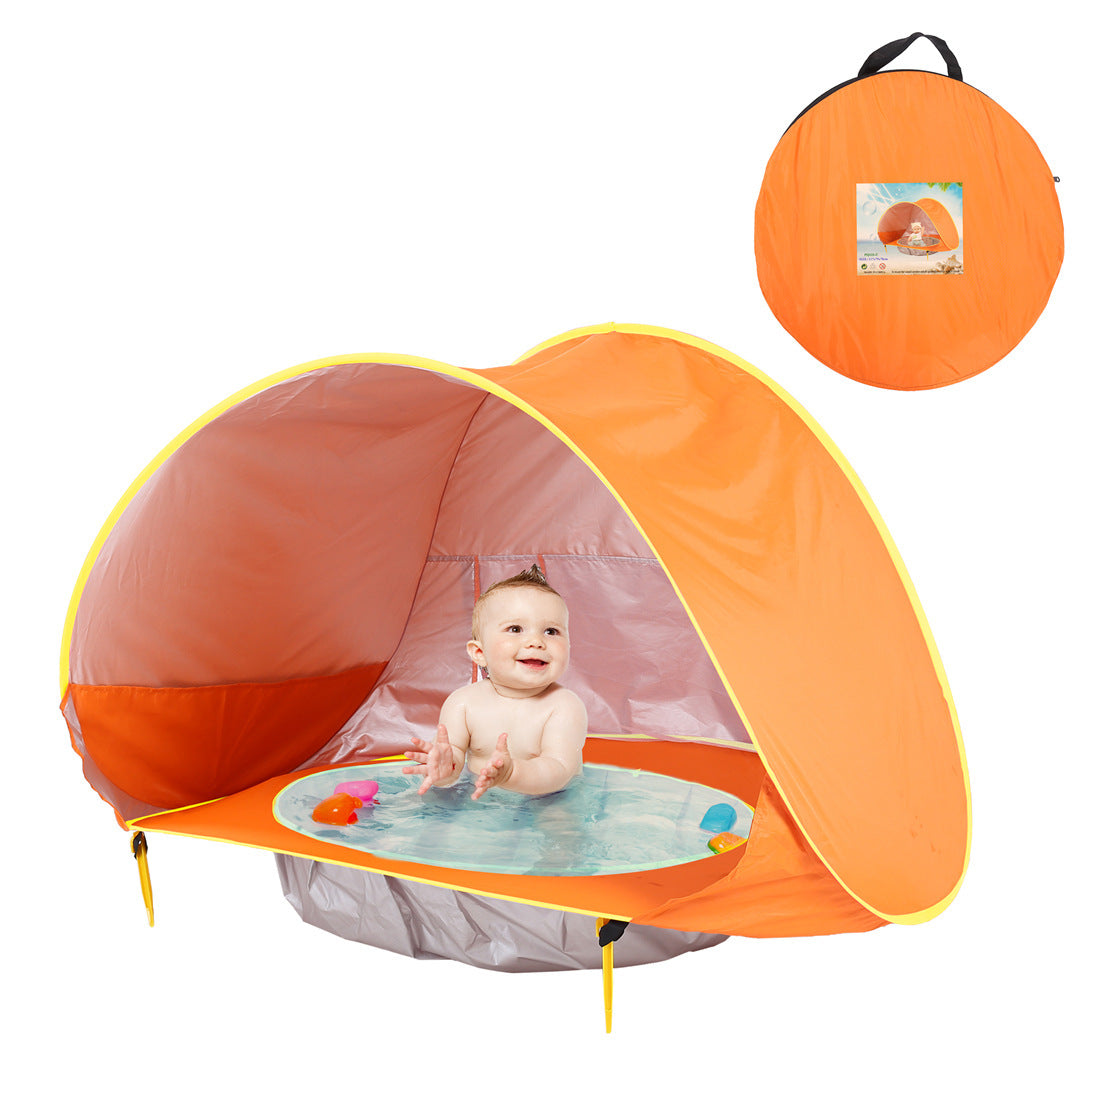 Ein BeachPool Zelt in Blau mit gelben Akzenten, aufgestellt und in Benutzung mit einem lächelnden Baby, das im integrierten Wasserpool sitzt. Das Zelt ist mit Wasserspielzeug ausgestattet. Ein kleines Bild in der oberen rechten Ecke zeigt das Zelt in seiner Orangen Tragetasche.